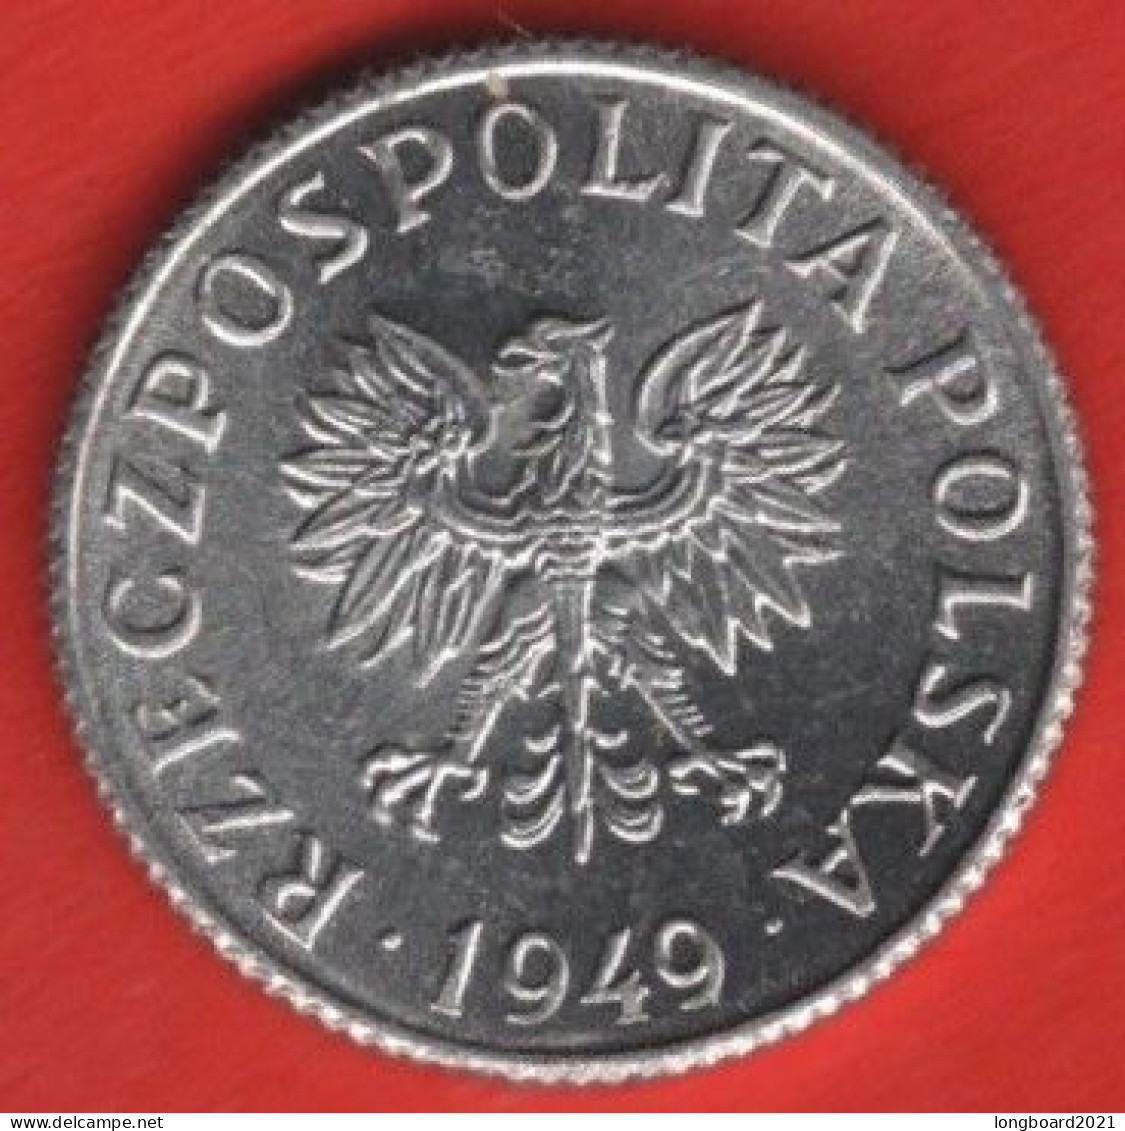 POLAND - 1 GROSZ 1949 - Polen